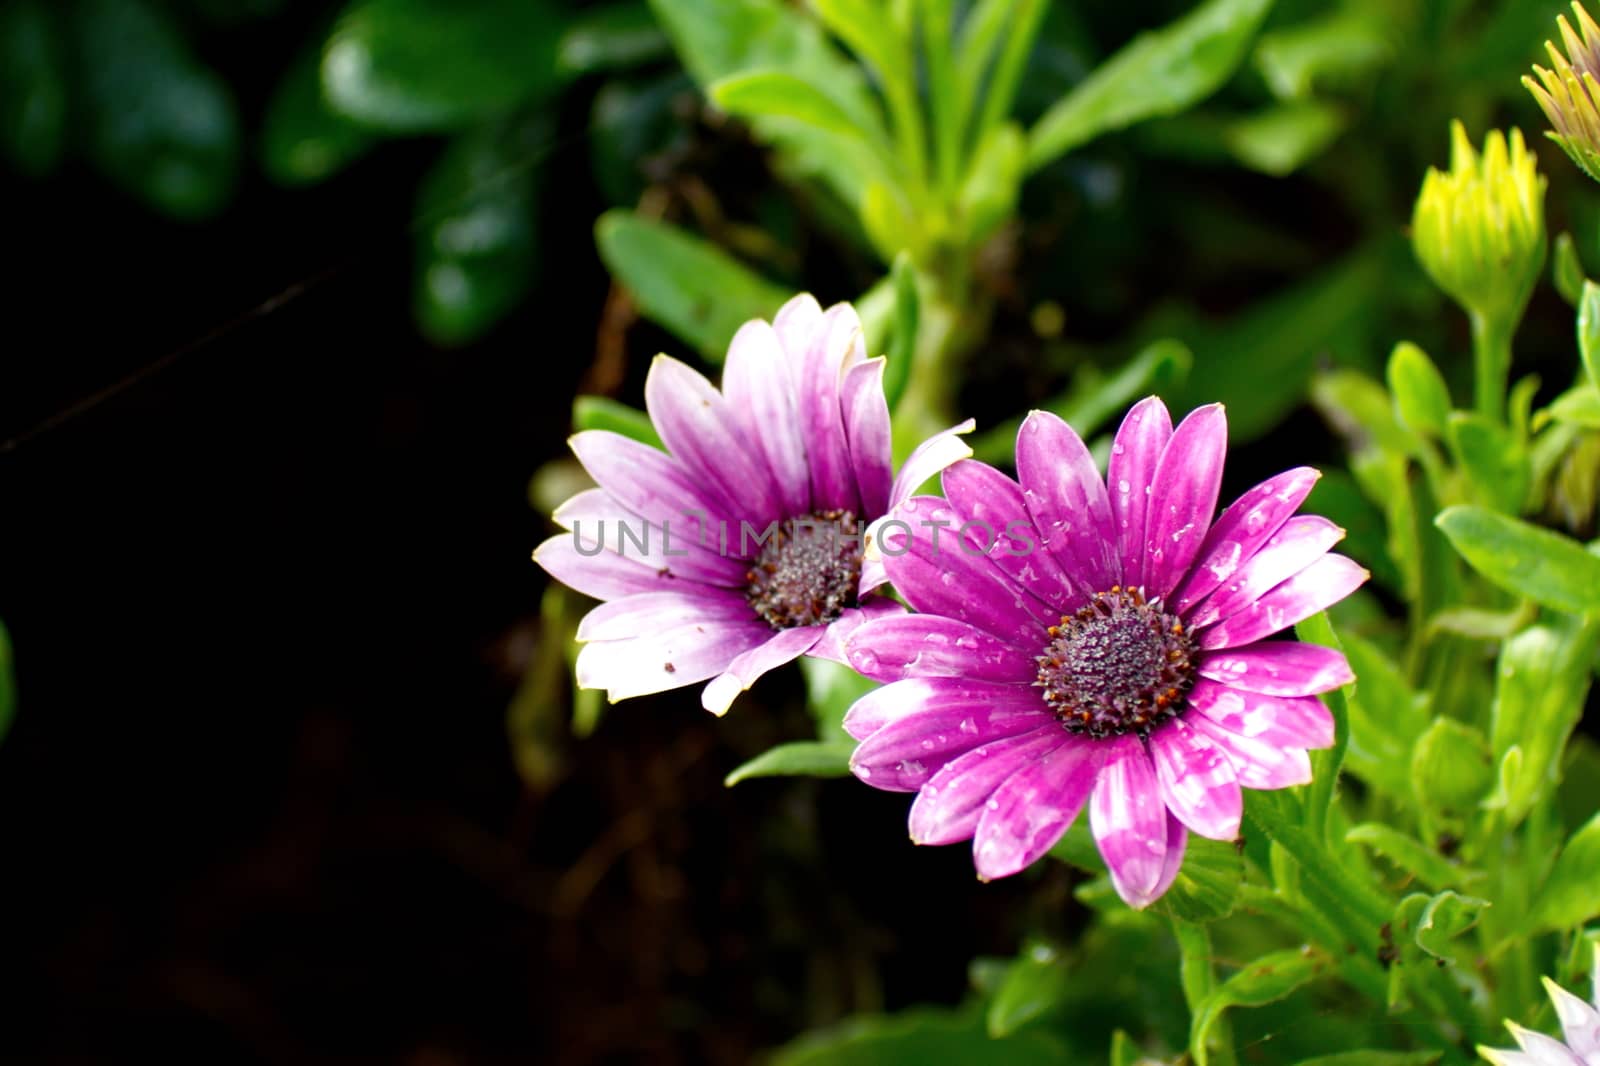 Purple African Daisy flower, Osteospermum flower on blurred background